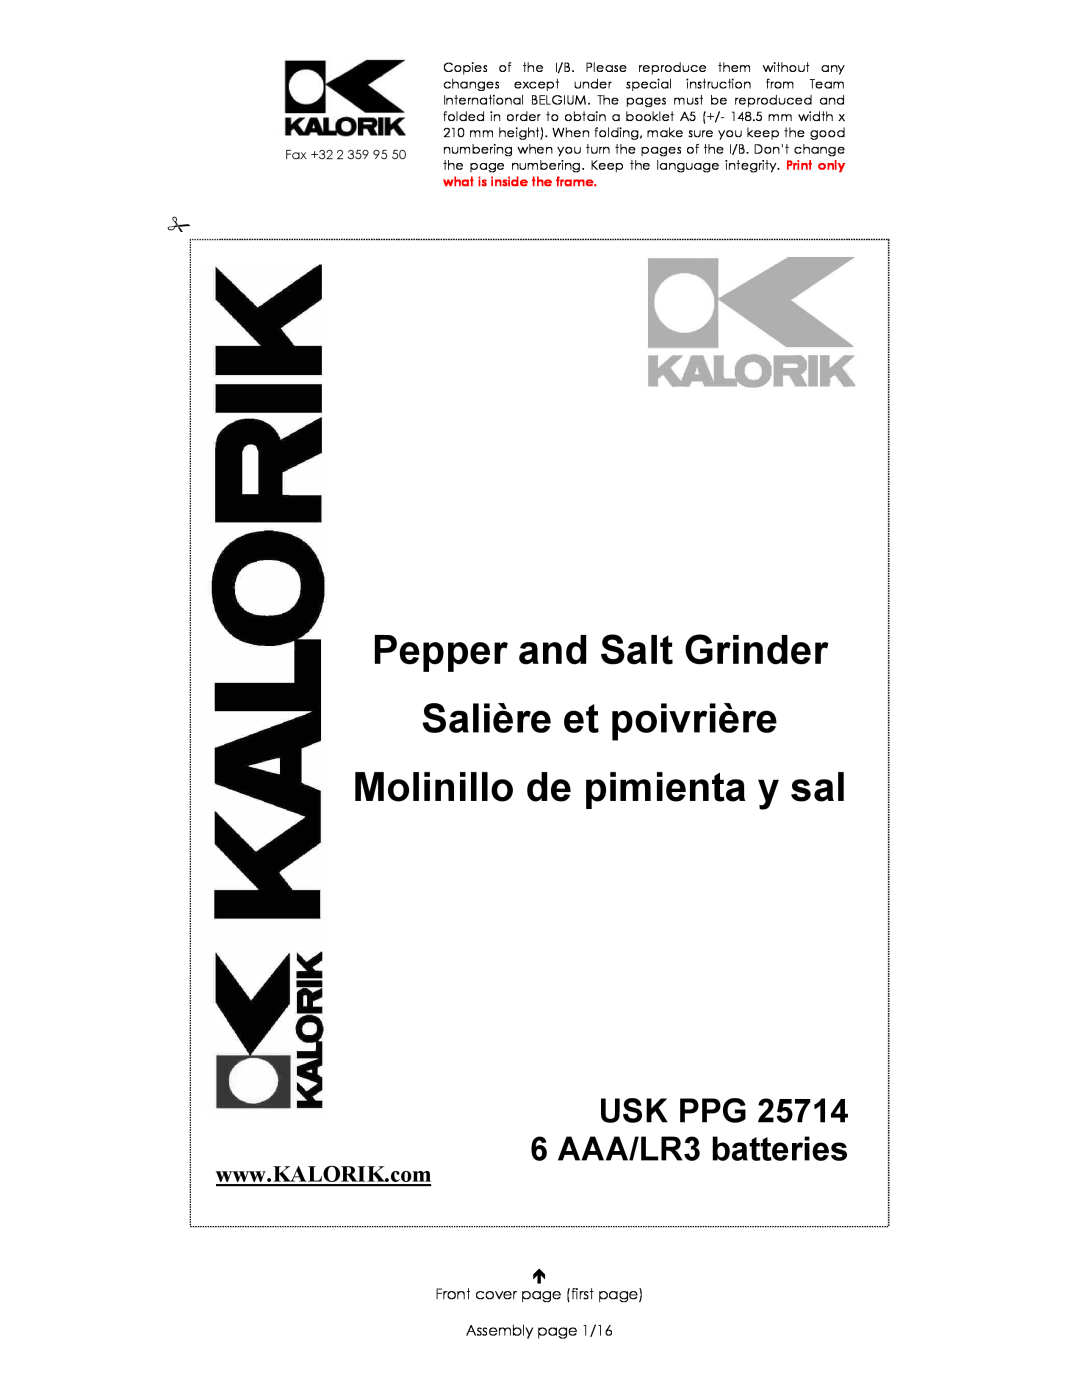 Kalorik USK PPG 25714 manual Pepper and Salt Grinder Salière et poivrière, Molinillo de pimienta y sal 